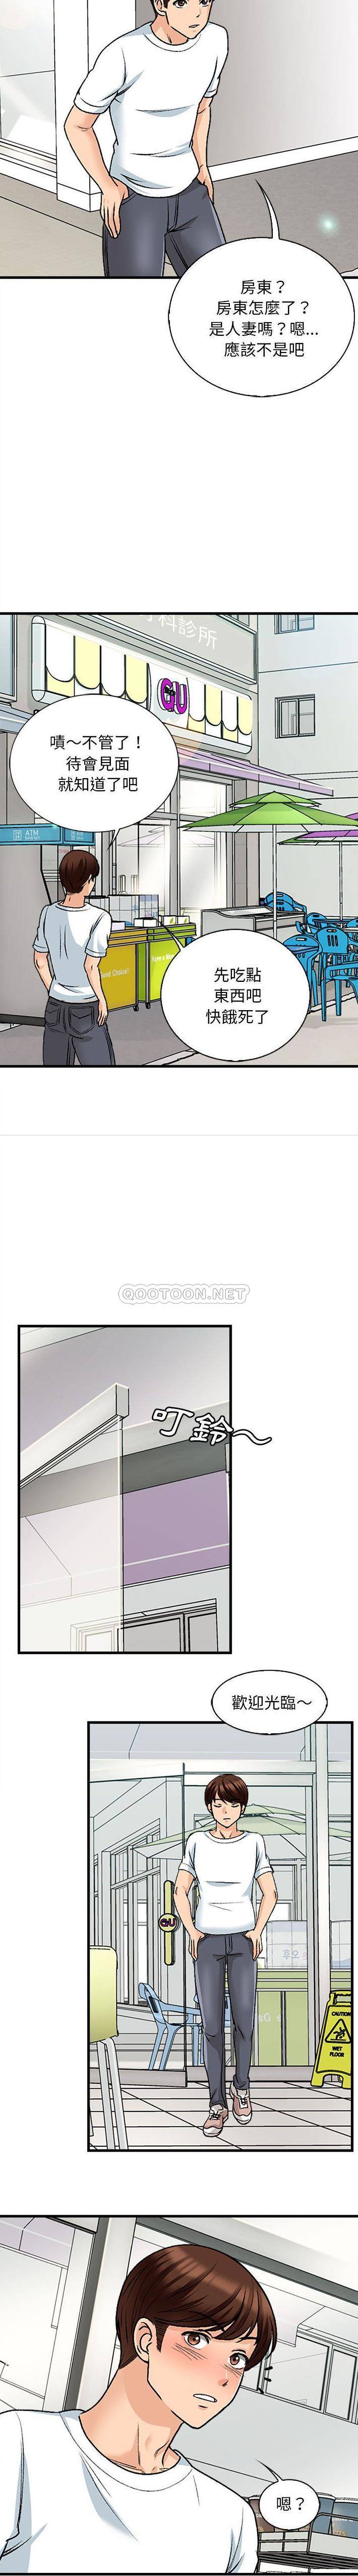 韩国污漫画 幸福公寓 第9话 7